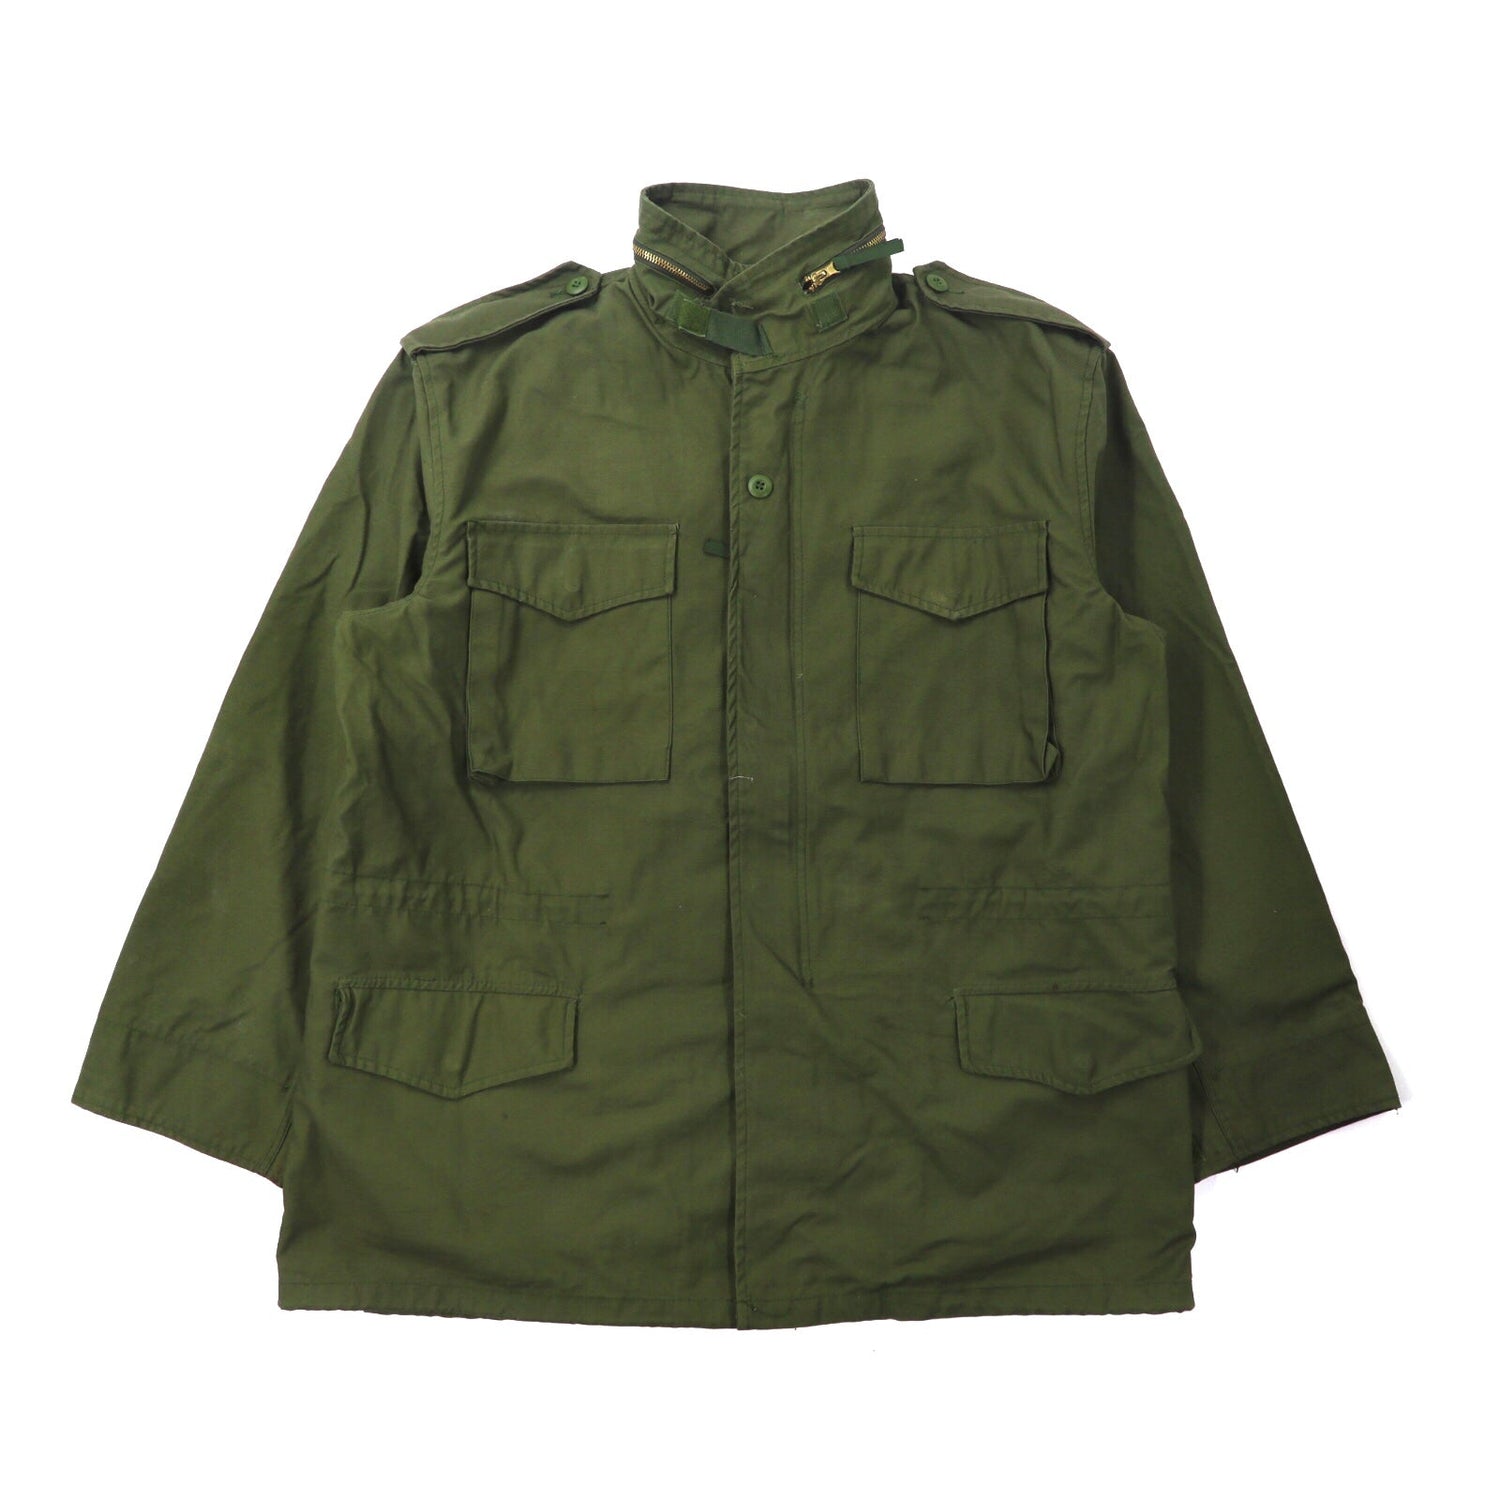 TRU-SPEC M-65 Field Jacket L Khaki Hooded 8415-00-782-29366 – 日本